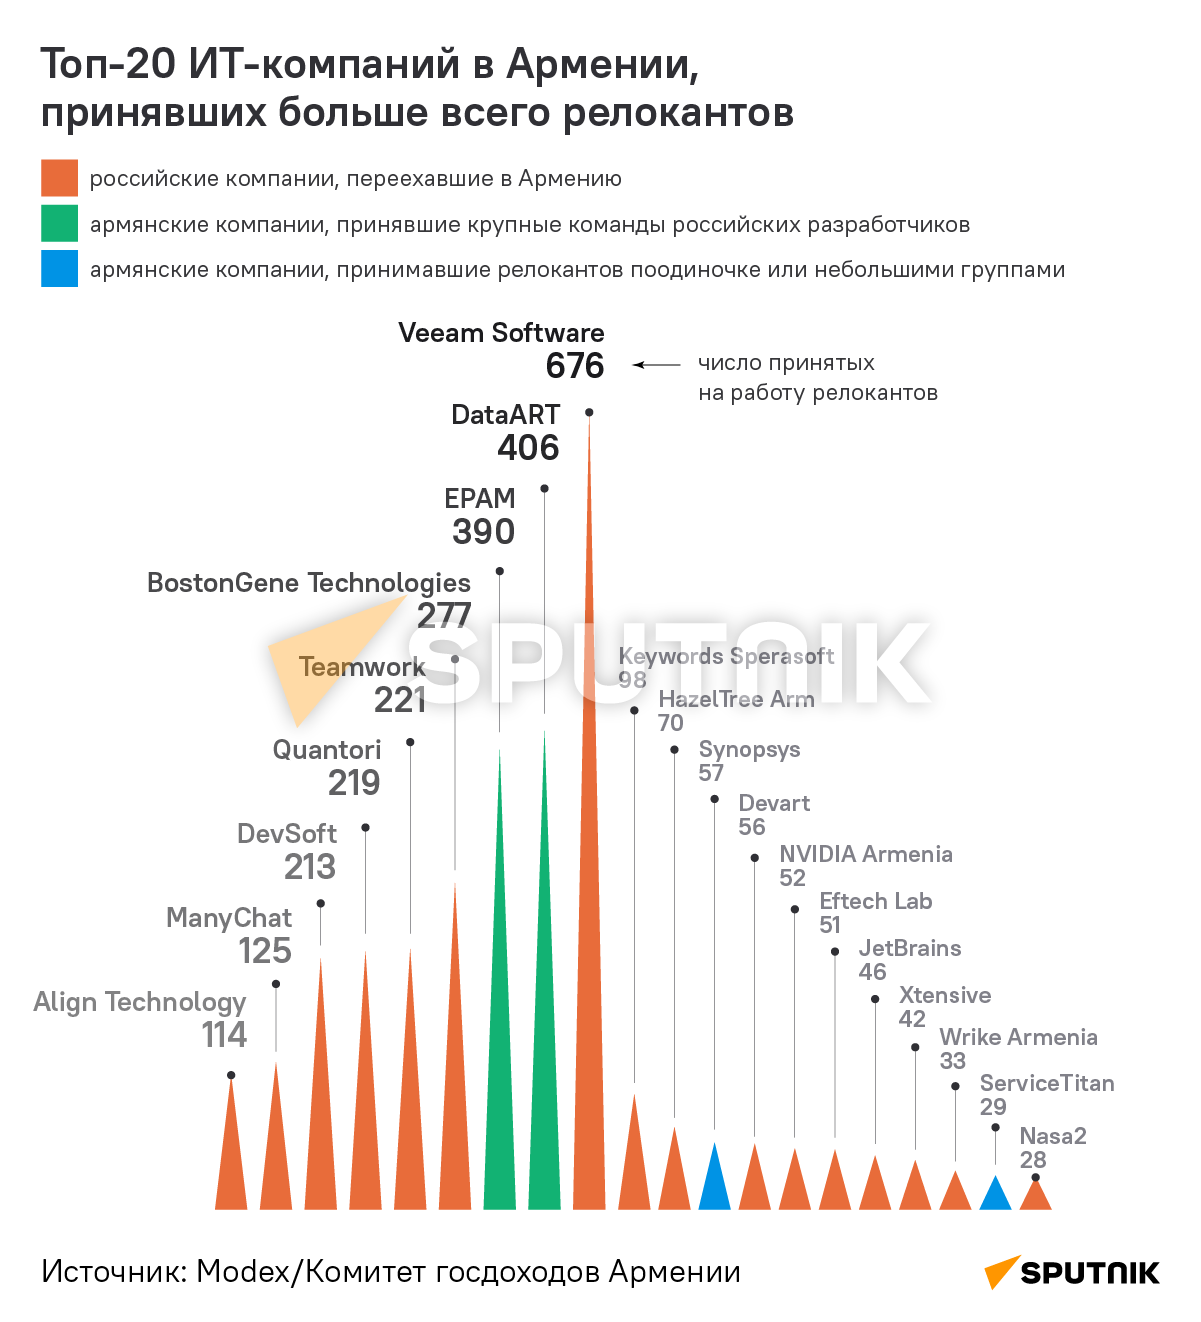 Топ-20 ИТ-компаний в Армении, принявших больше всего релокантов - Sputnik Армения